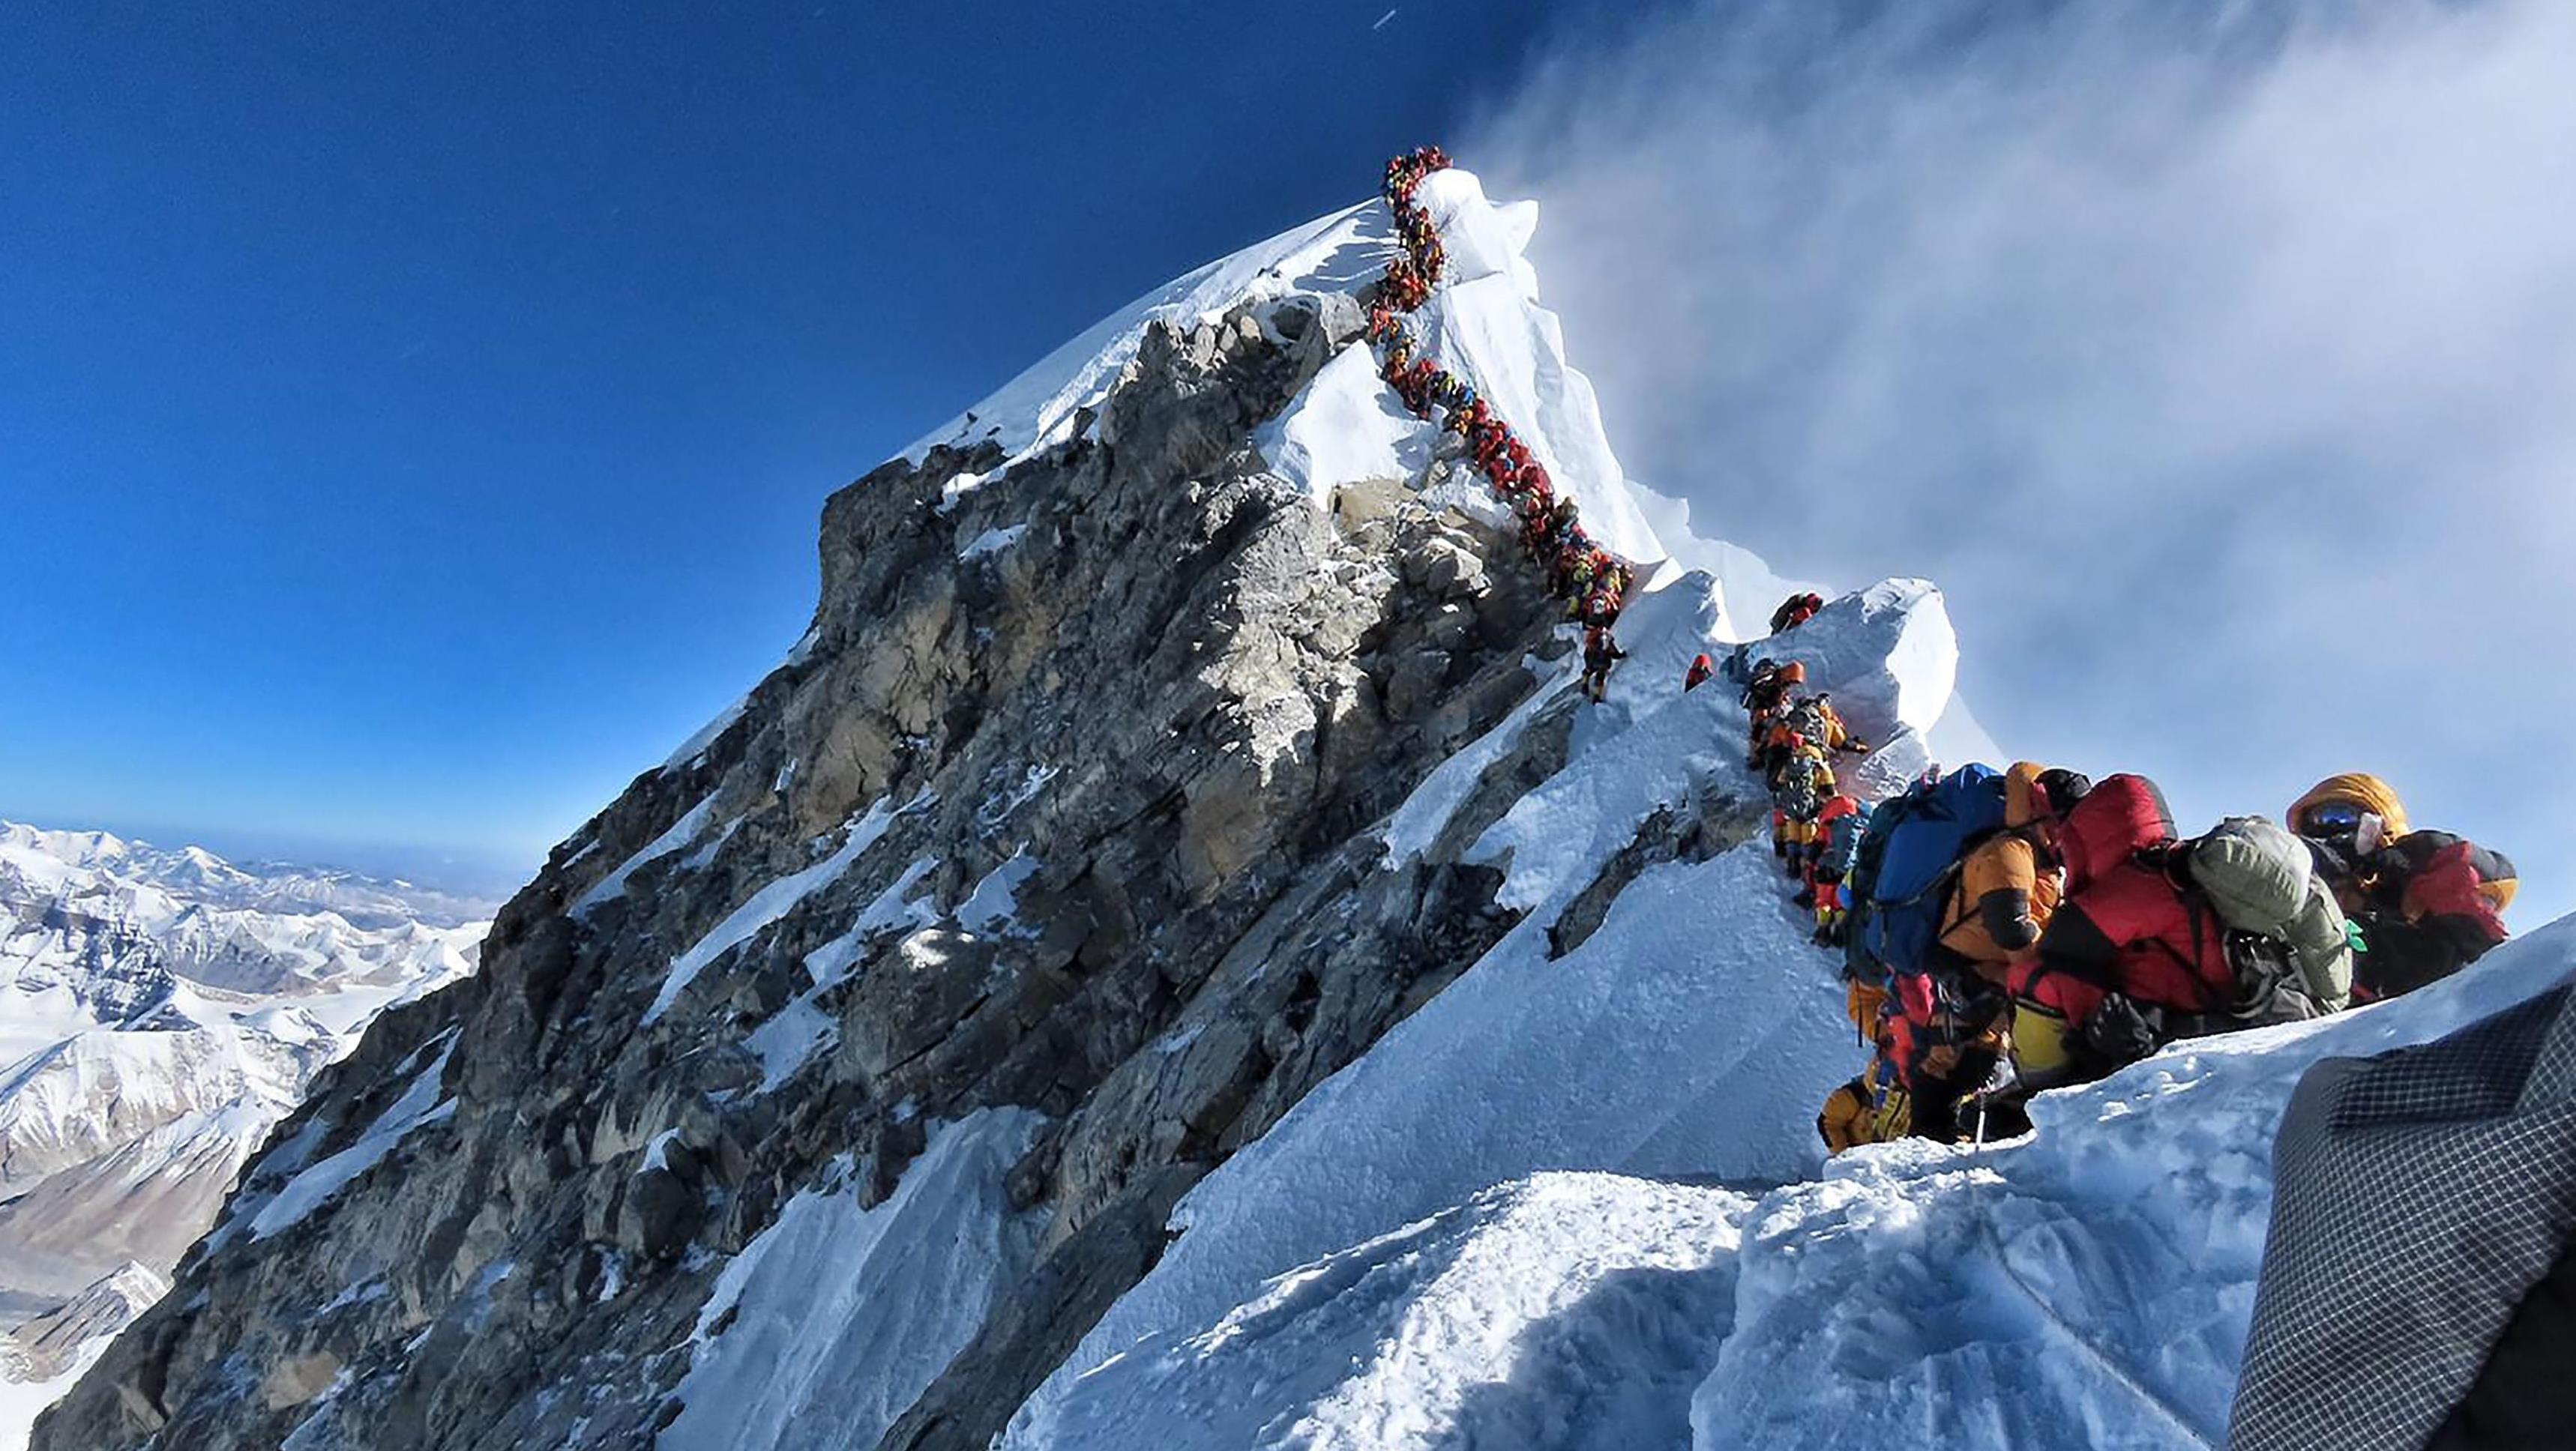 Makabryczny Widok Na Mount Everest Mijali Zamarzniete Zwloki W Kolejce Na Szczyt